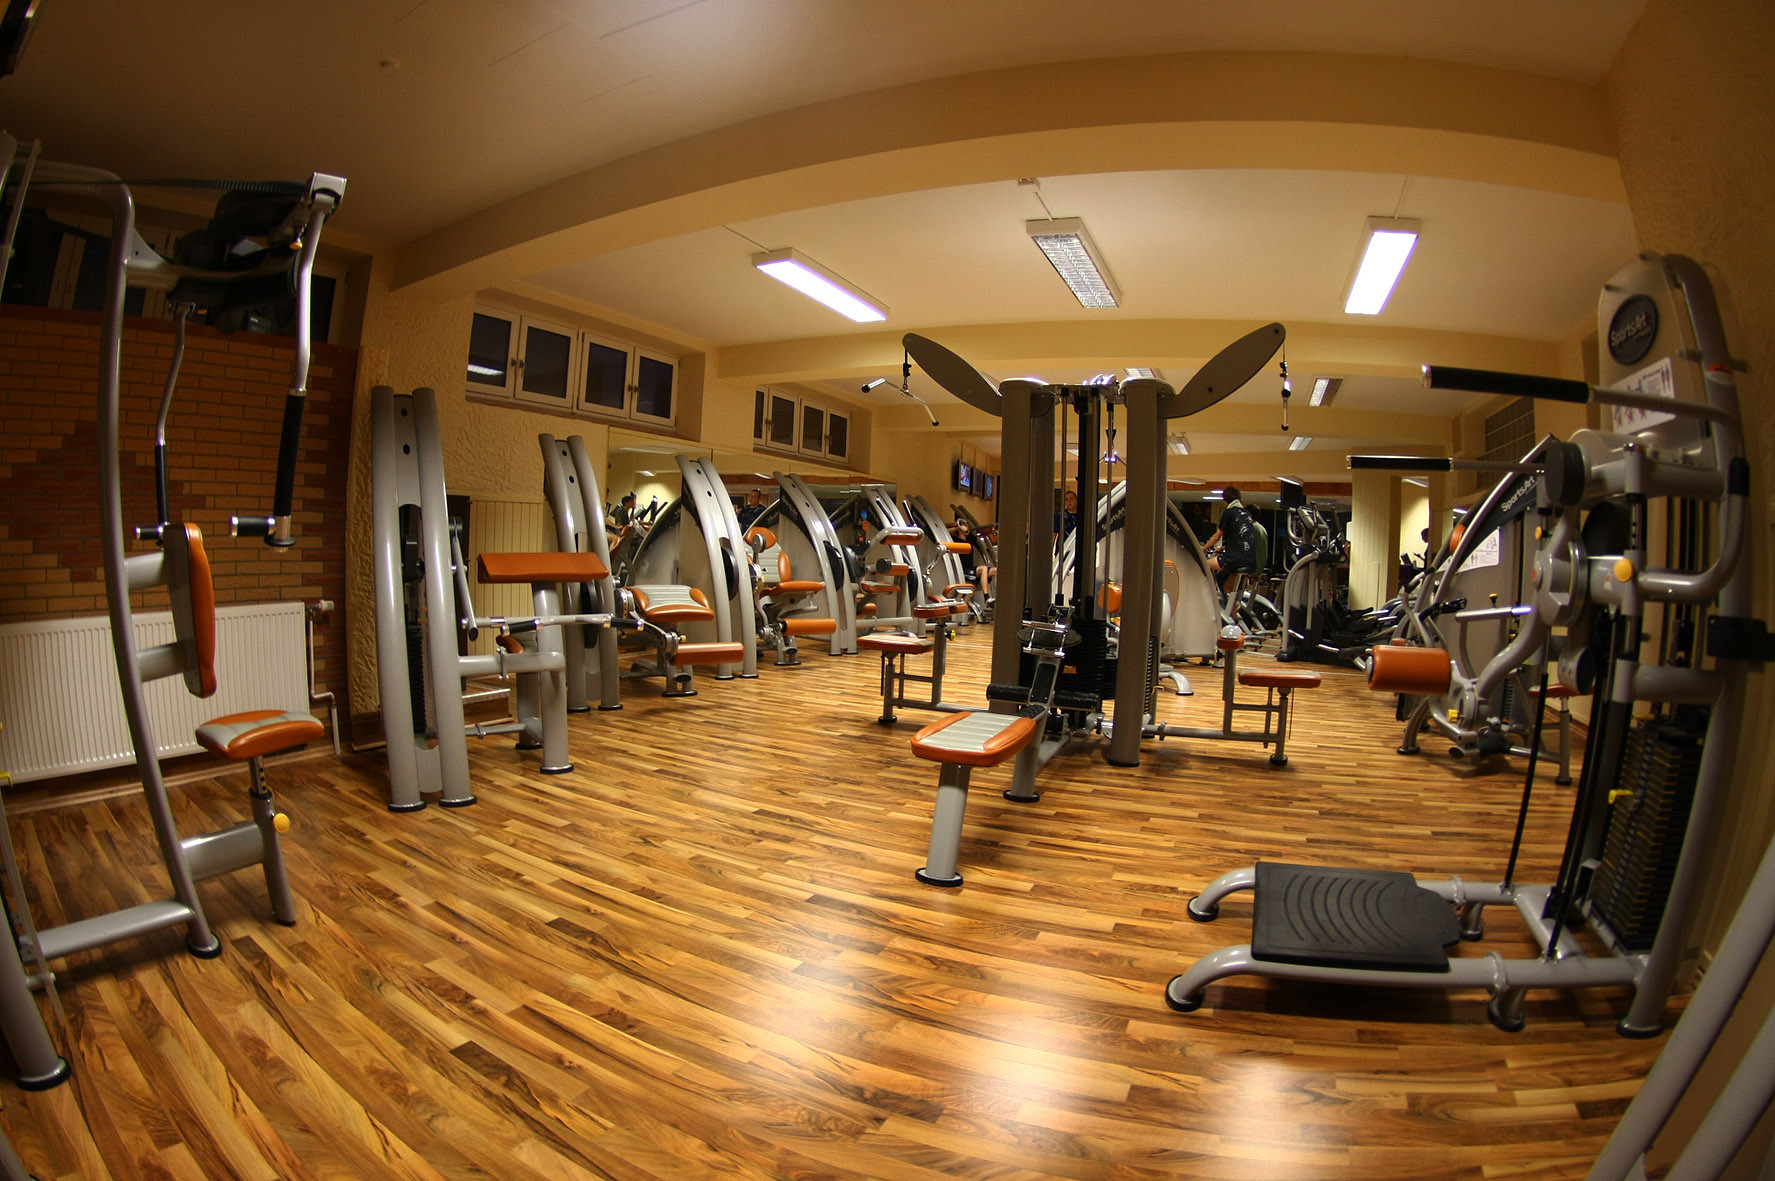 Fitness Studio Sport